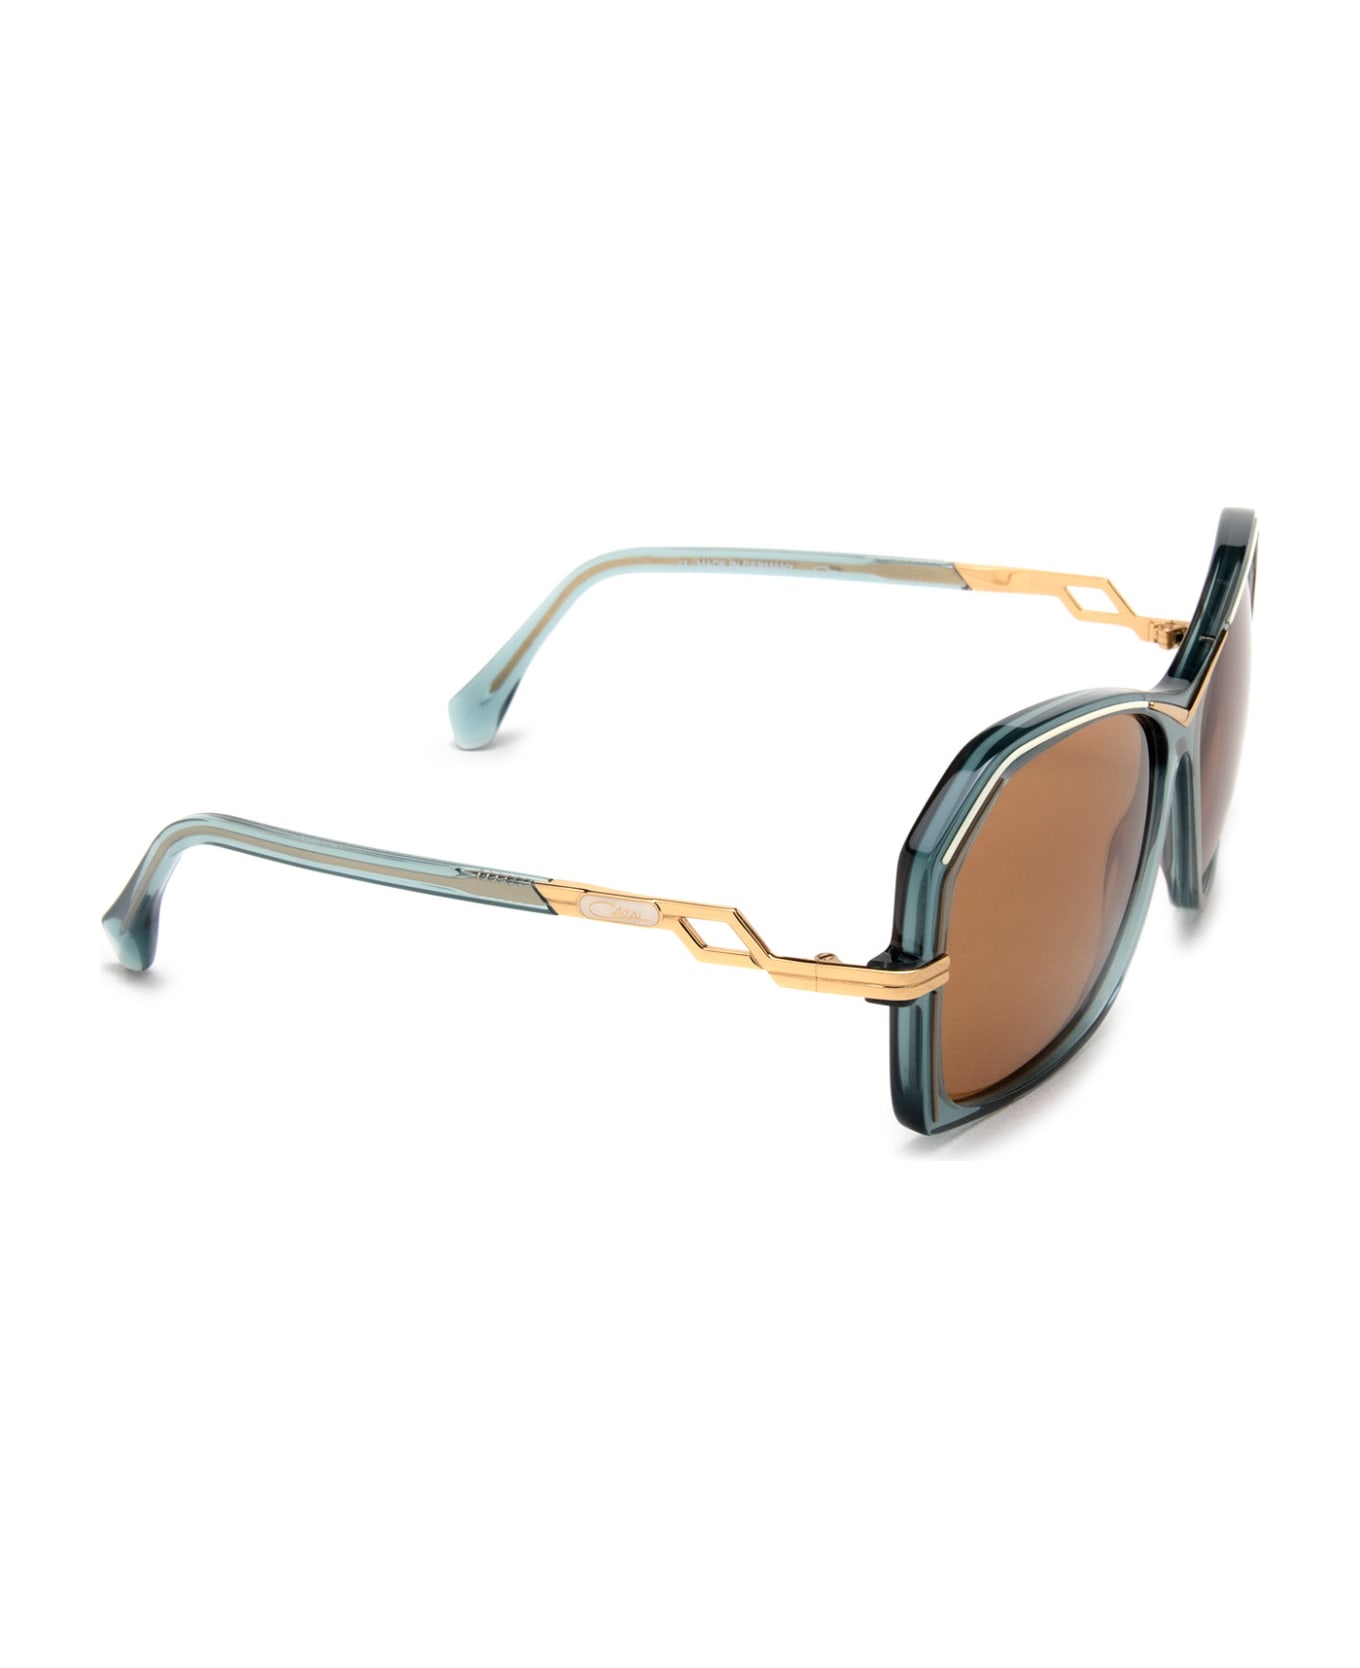 Cazal 8510 bottega veneta eyewear bv1088s rectangular frame sunglasses item Sunglasses - bottega veneta eyewear bv1088s rectangular frame sunglasses item